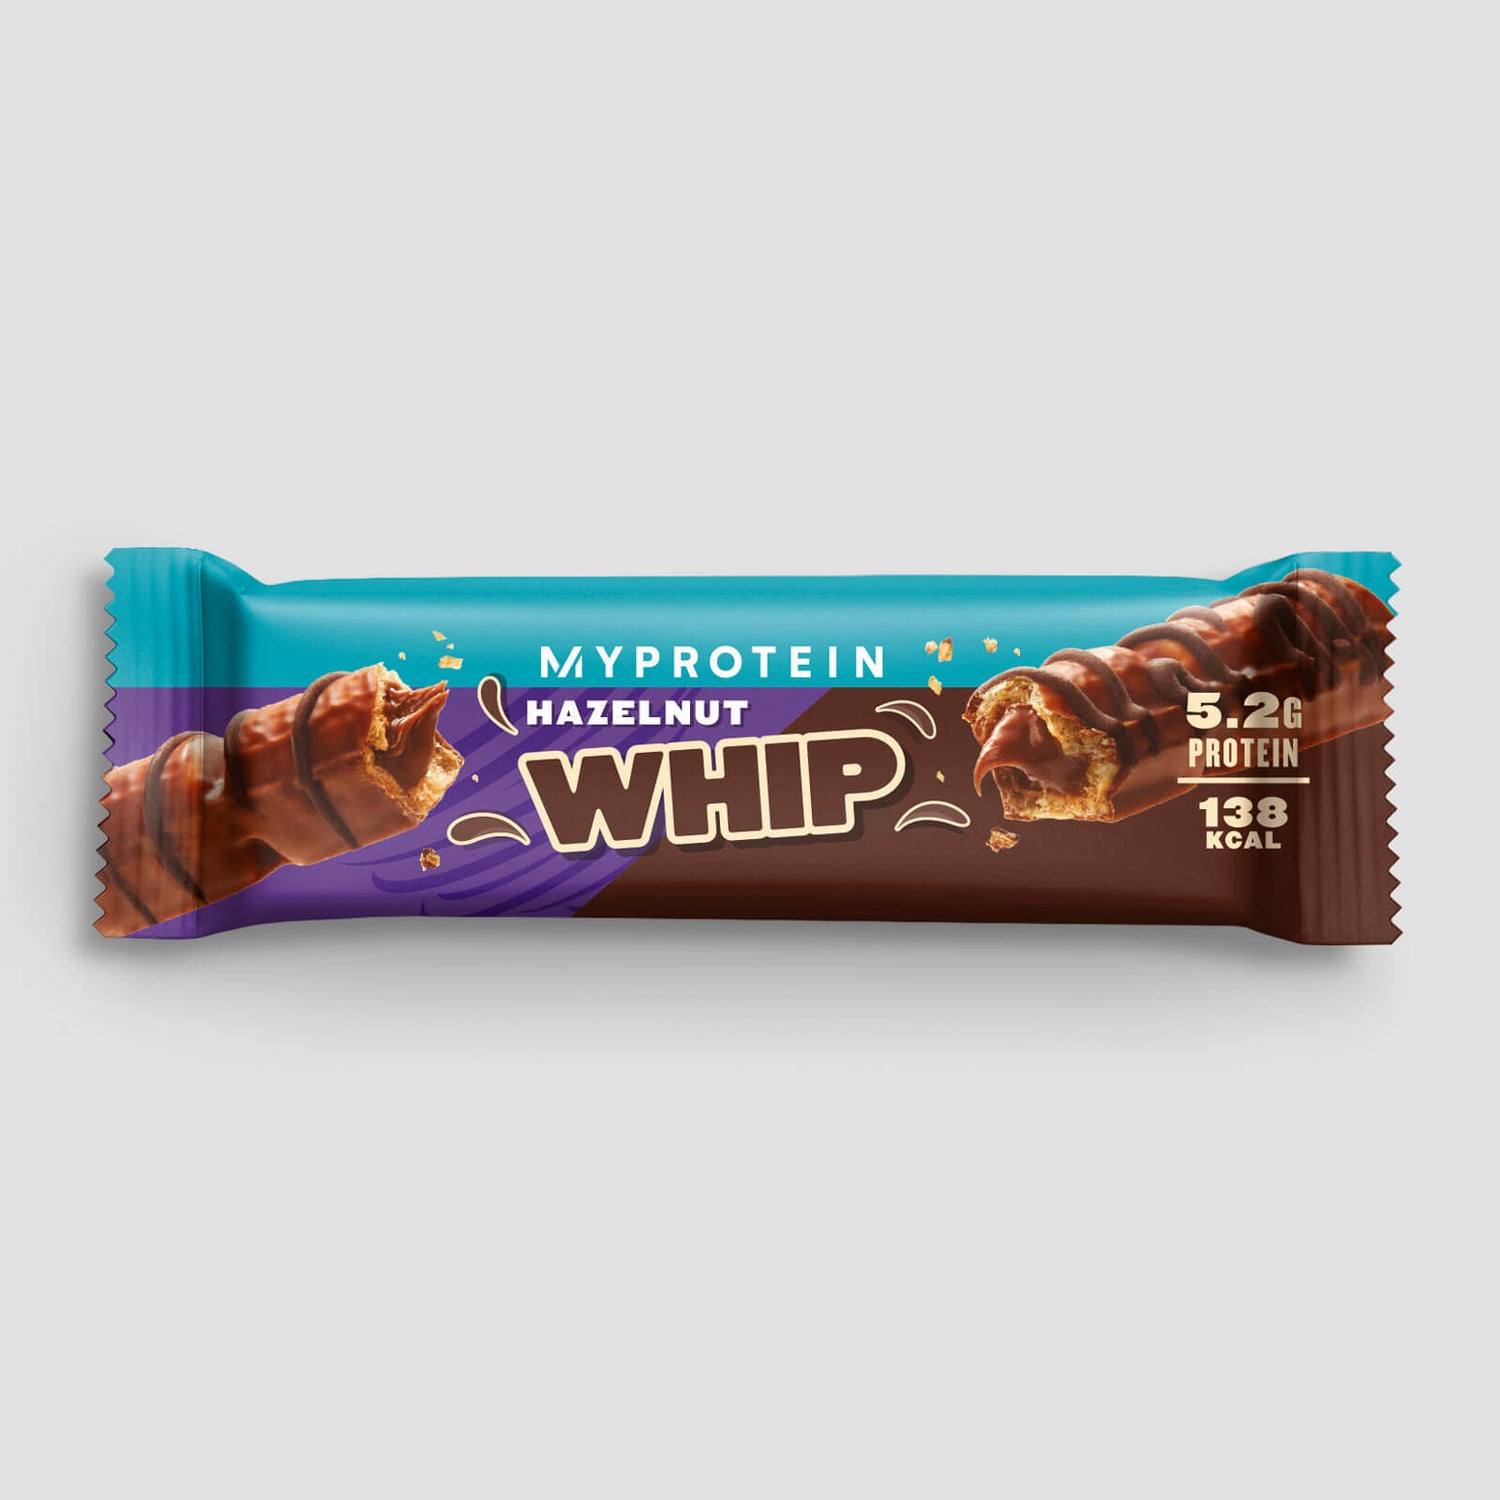 Myprotein Hazelnut Whip (Sample) - 24g - Milk Chocolate